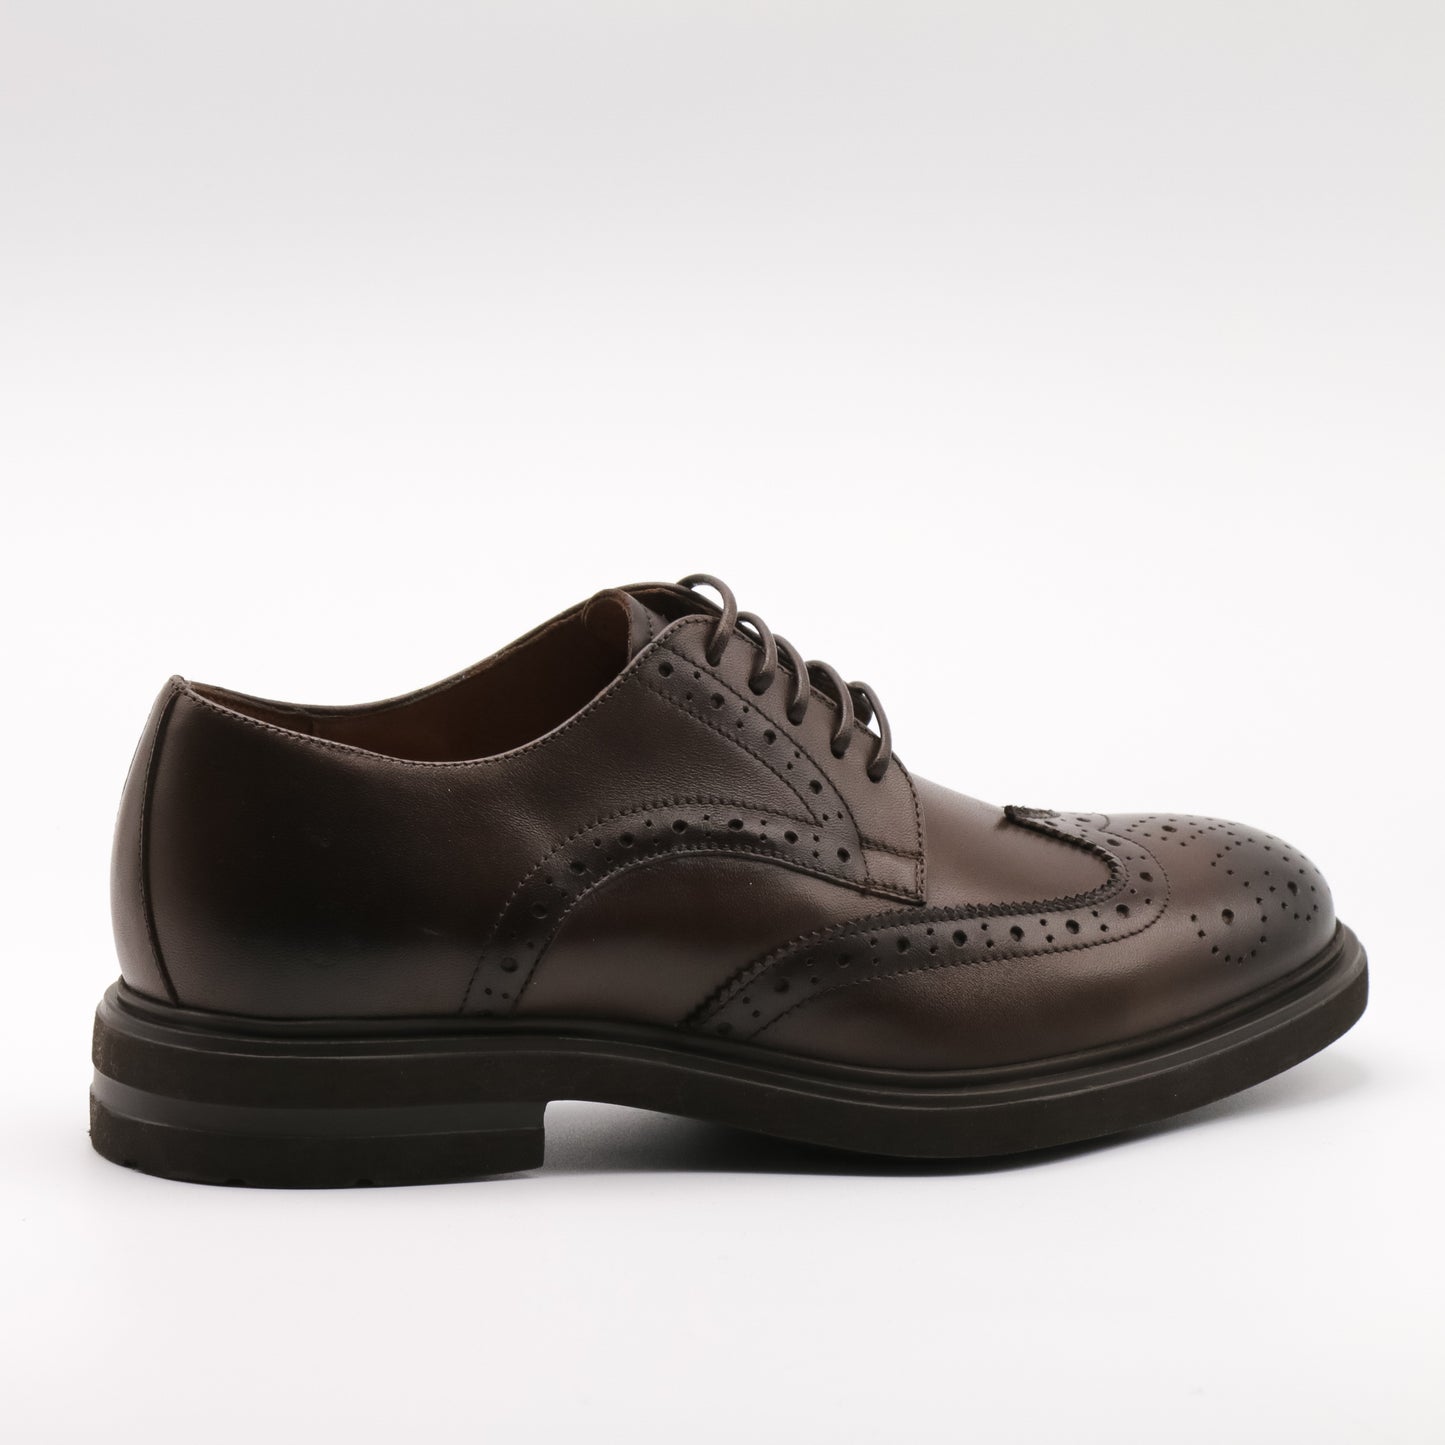 Pantofi eleganți bărbați din piele naturală 6979